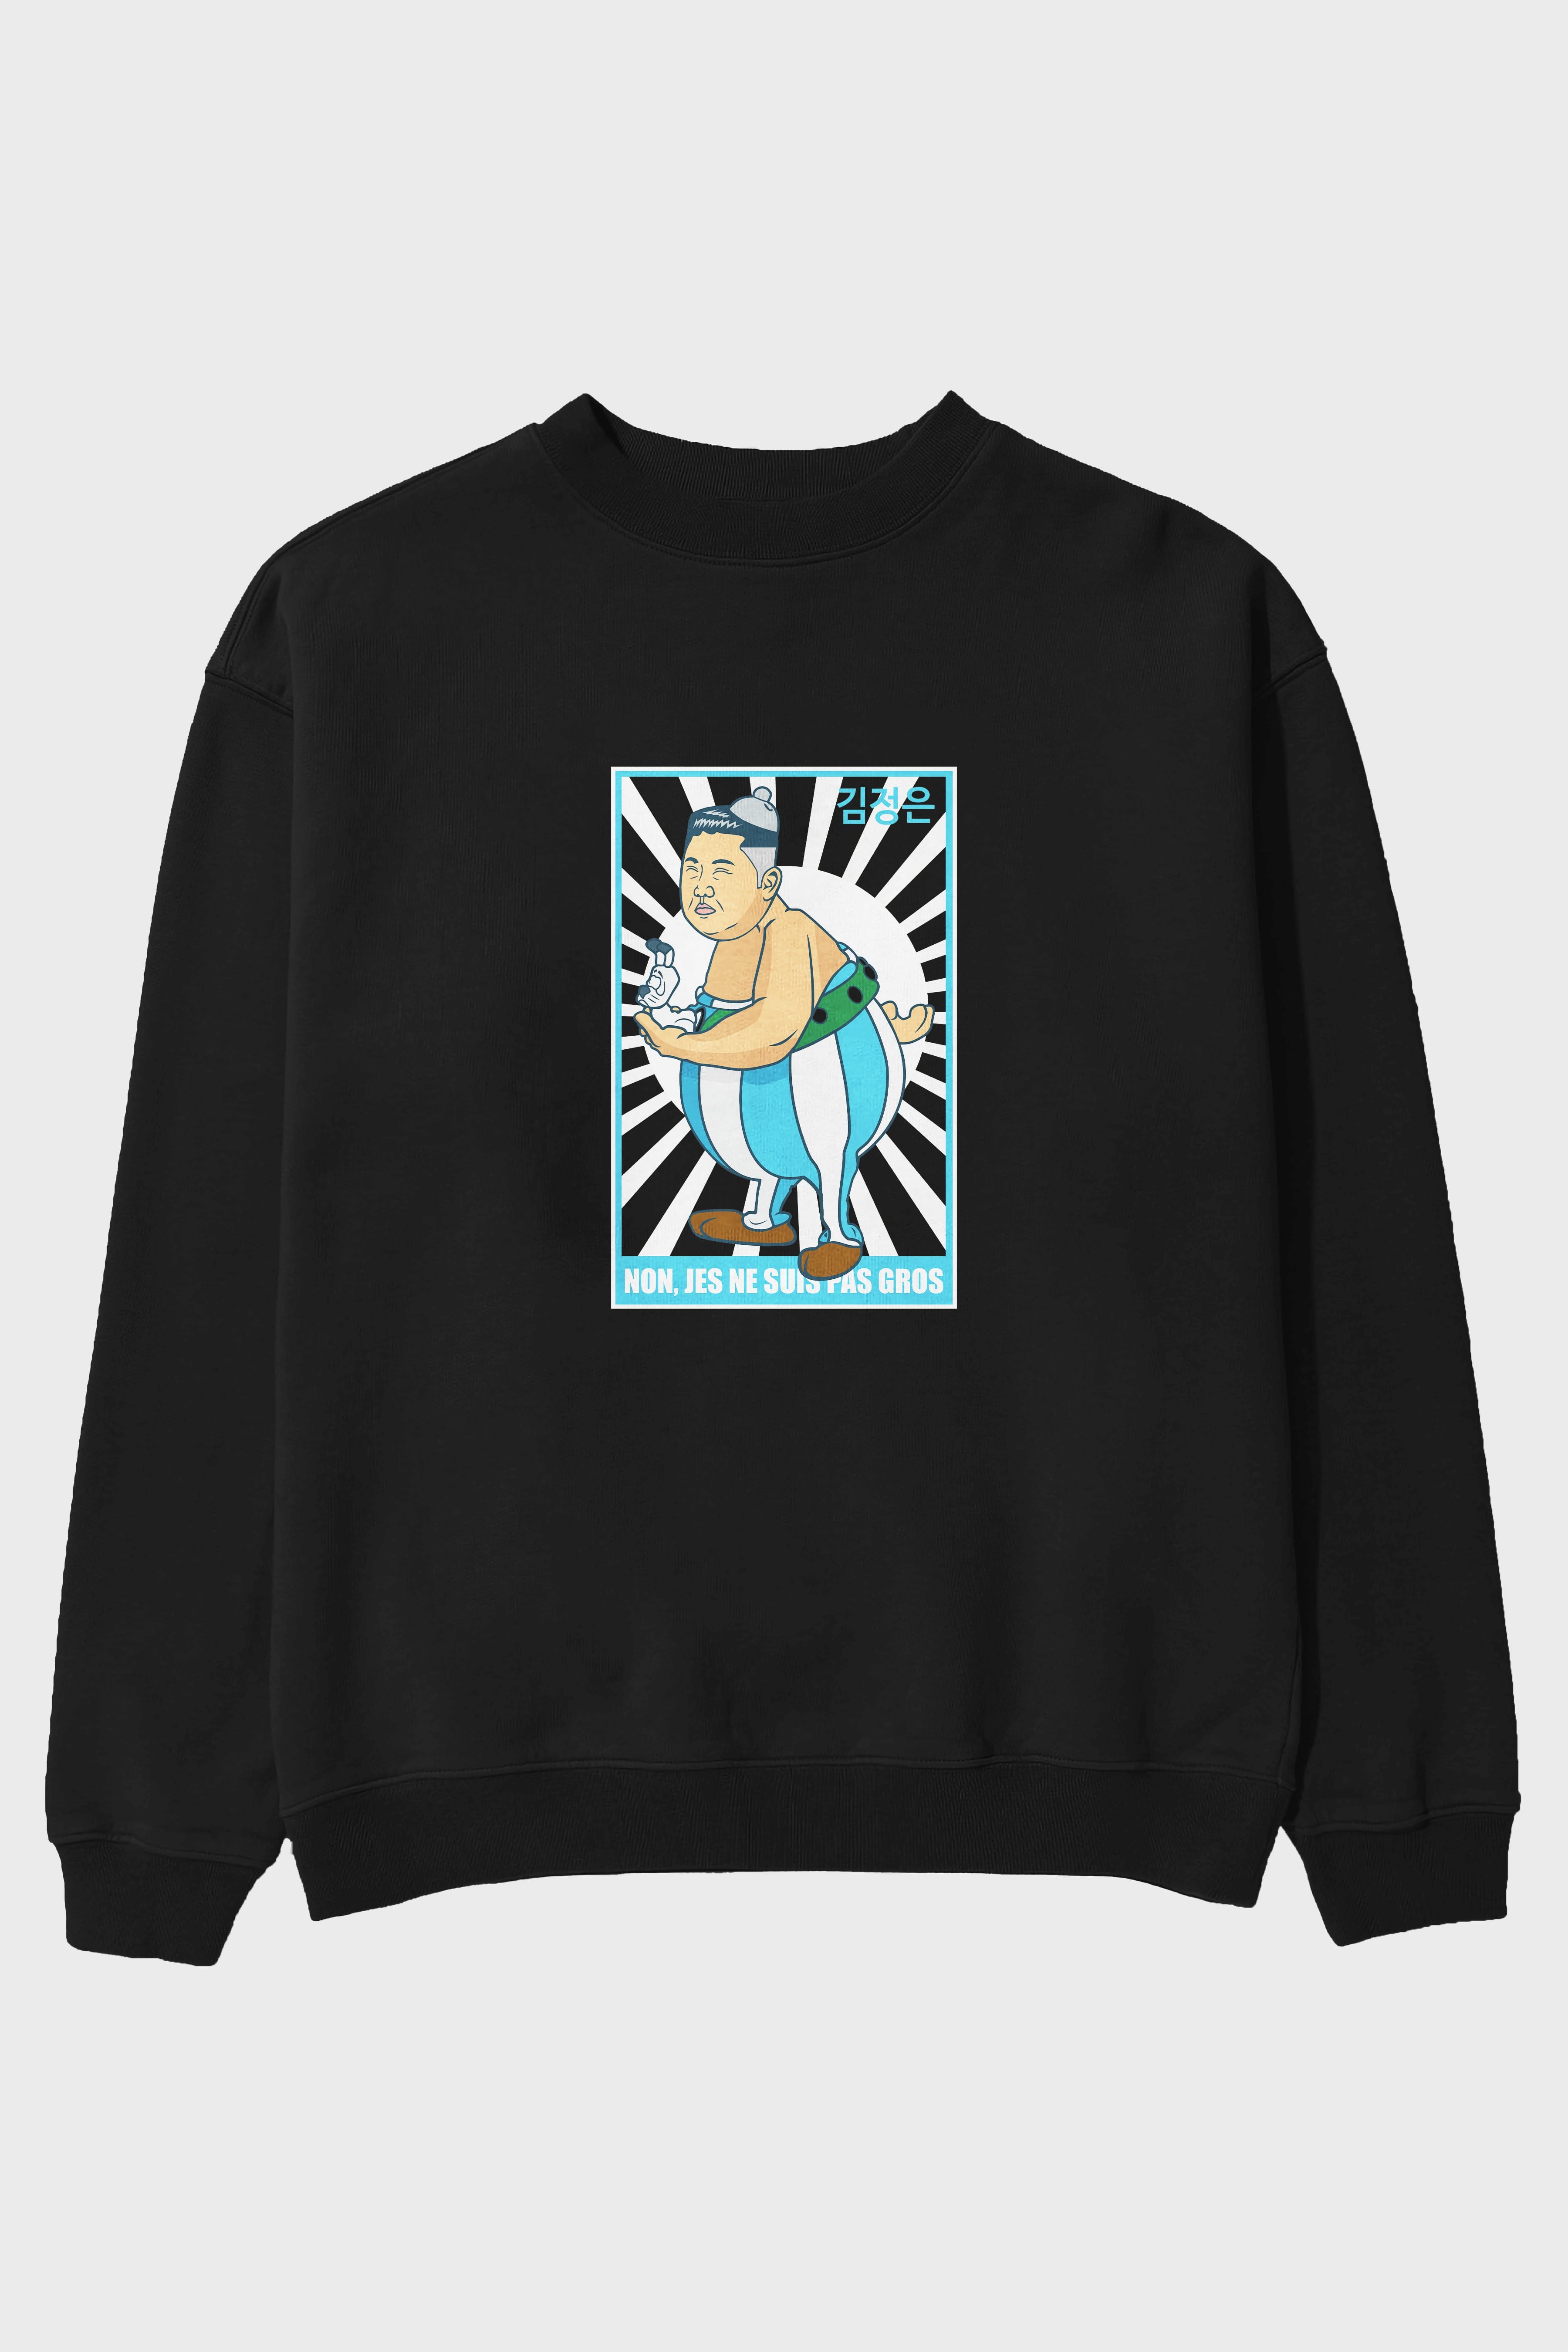 Obelix Jong Un Ön Baskılı Oversize Sweatshirt Erkek Kadın Unisex